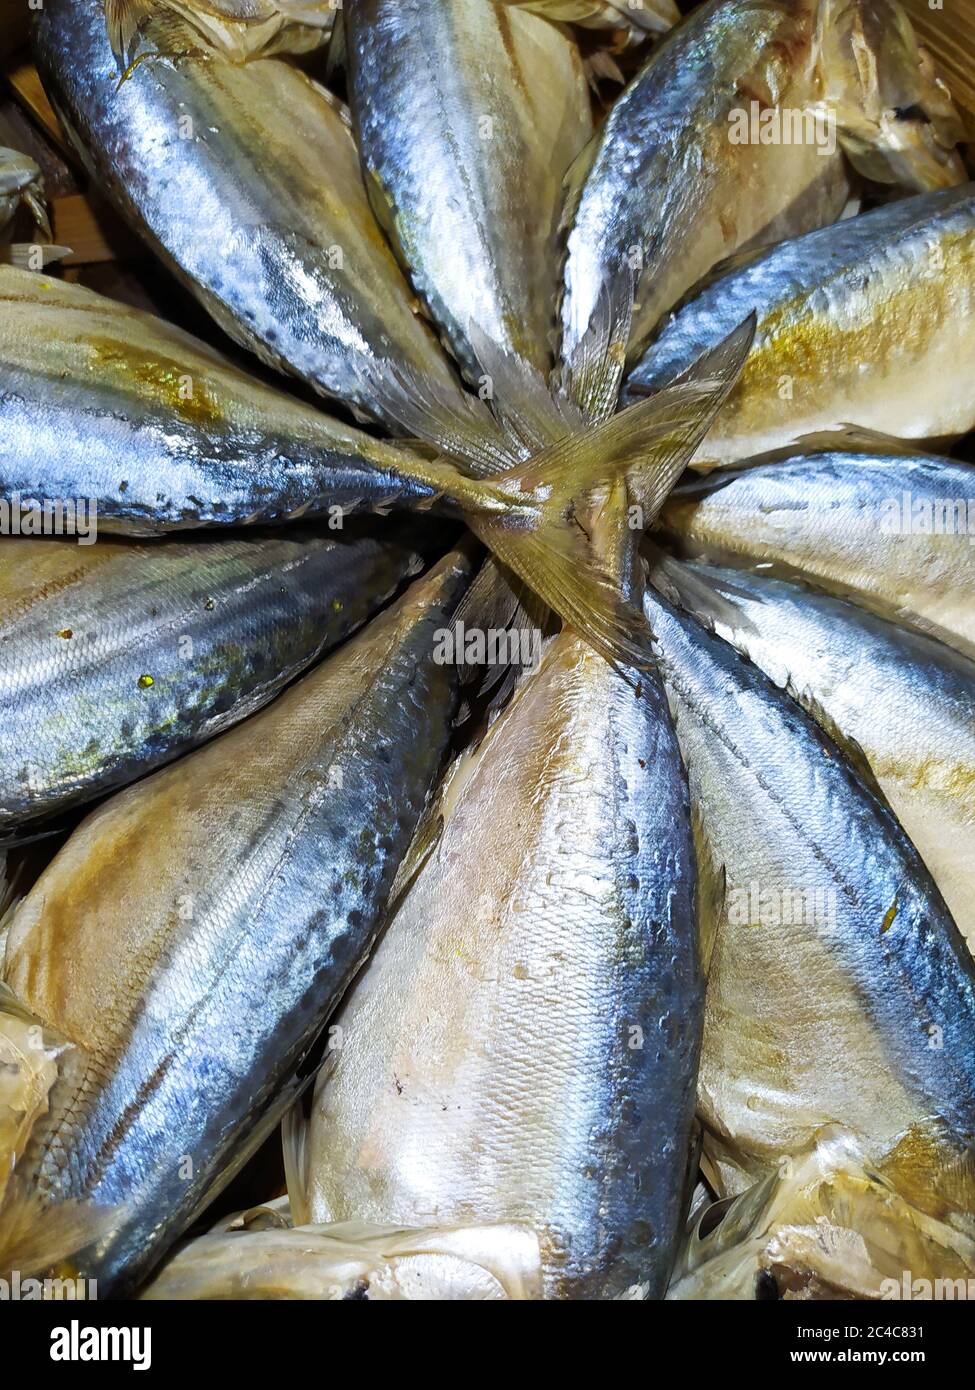 Le magnifique poisson de maquereau était vendu sur le marché, Bangkok Thaïlande Banque D'Images